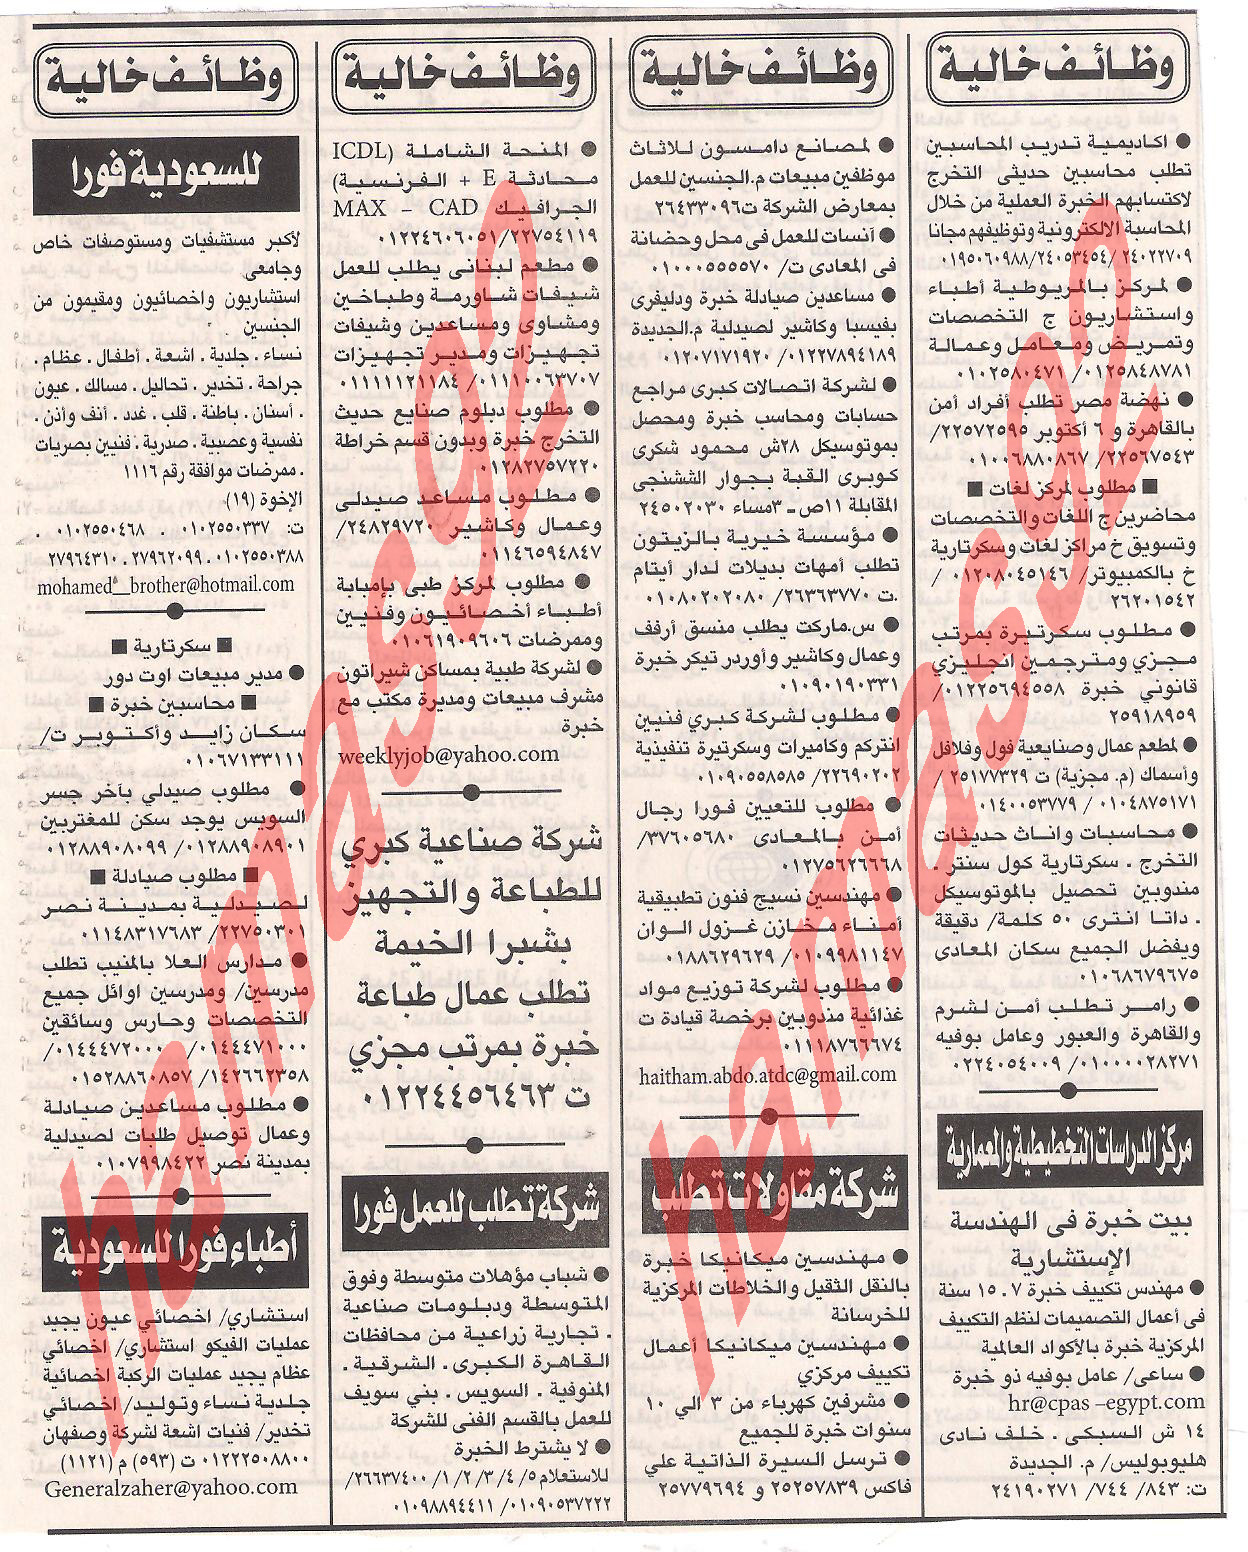 وظائف جريدة اهرام الجمعة 25 نوفمبر 2011 ,  وظائف الاهرام  العددالاسبوعى 25/11/2011 , الجزء الاول Picture+010